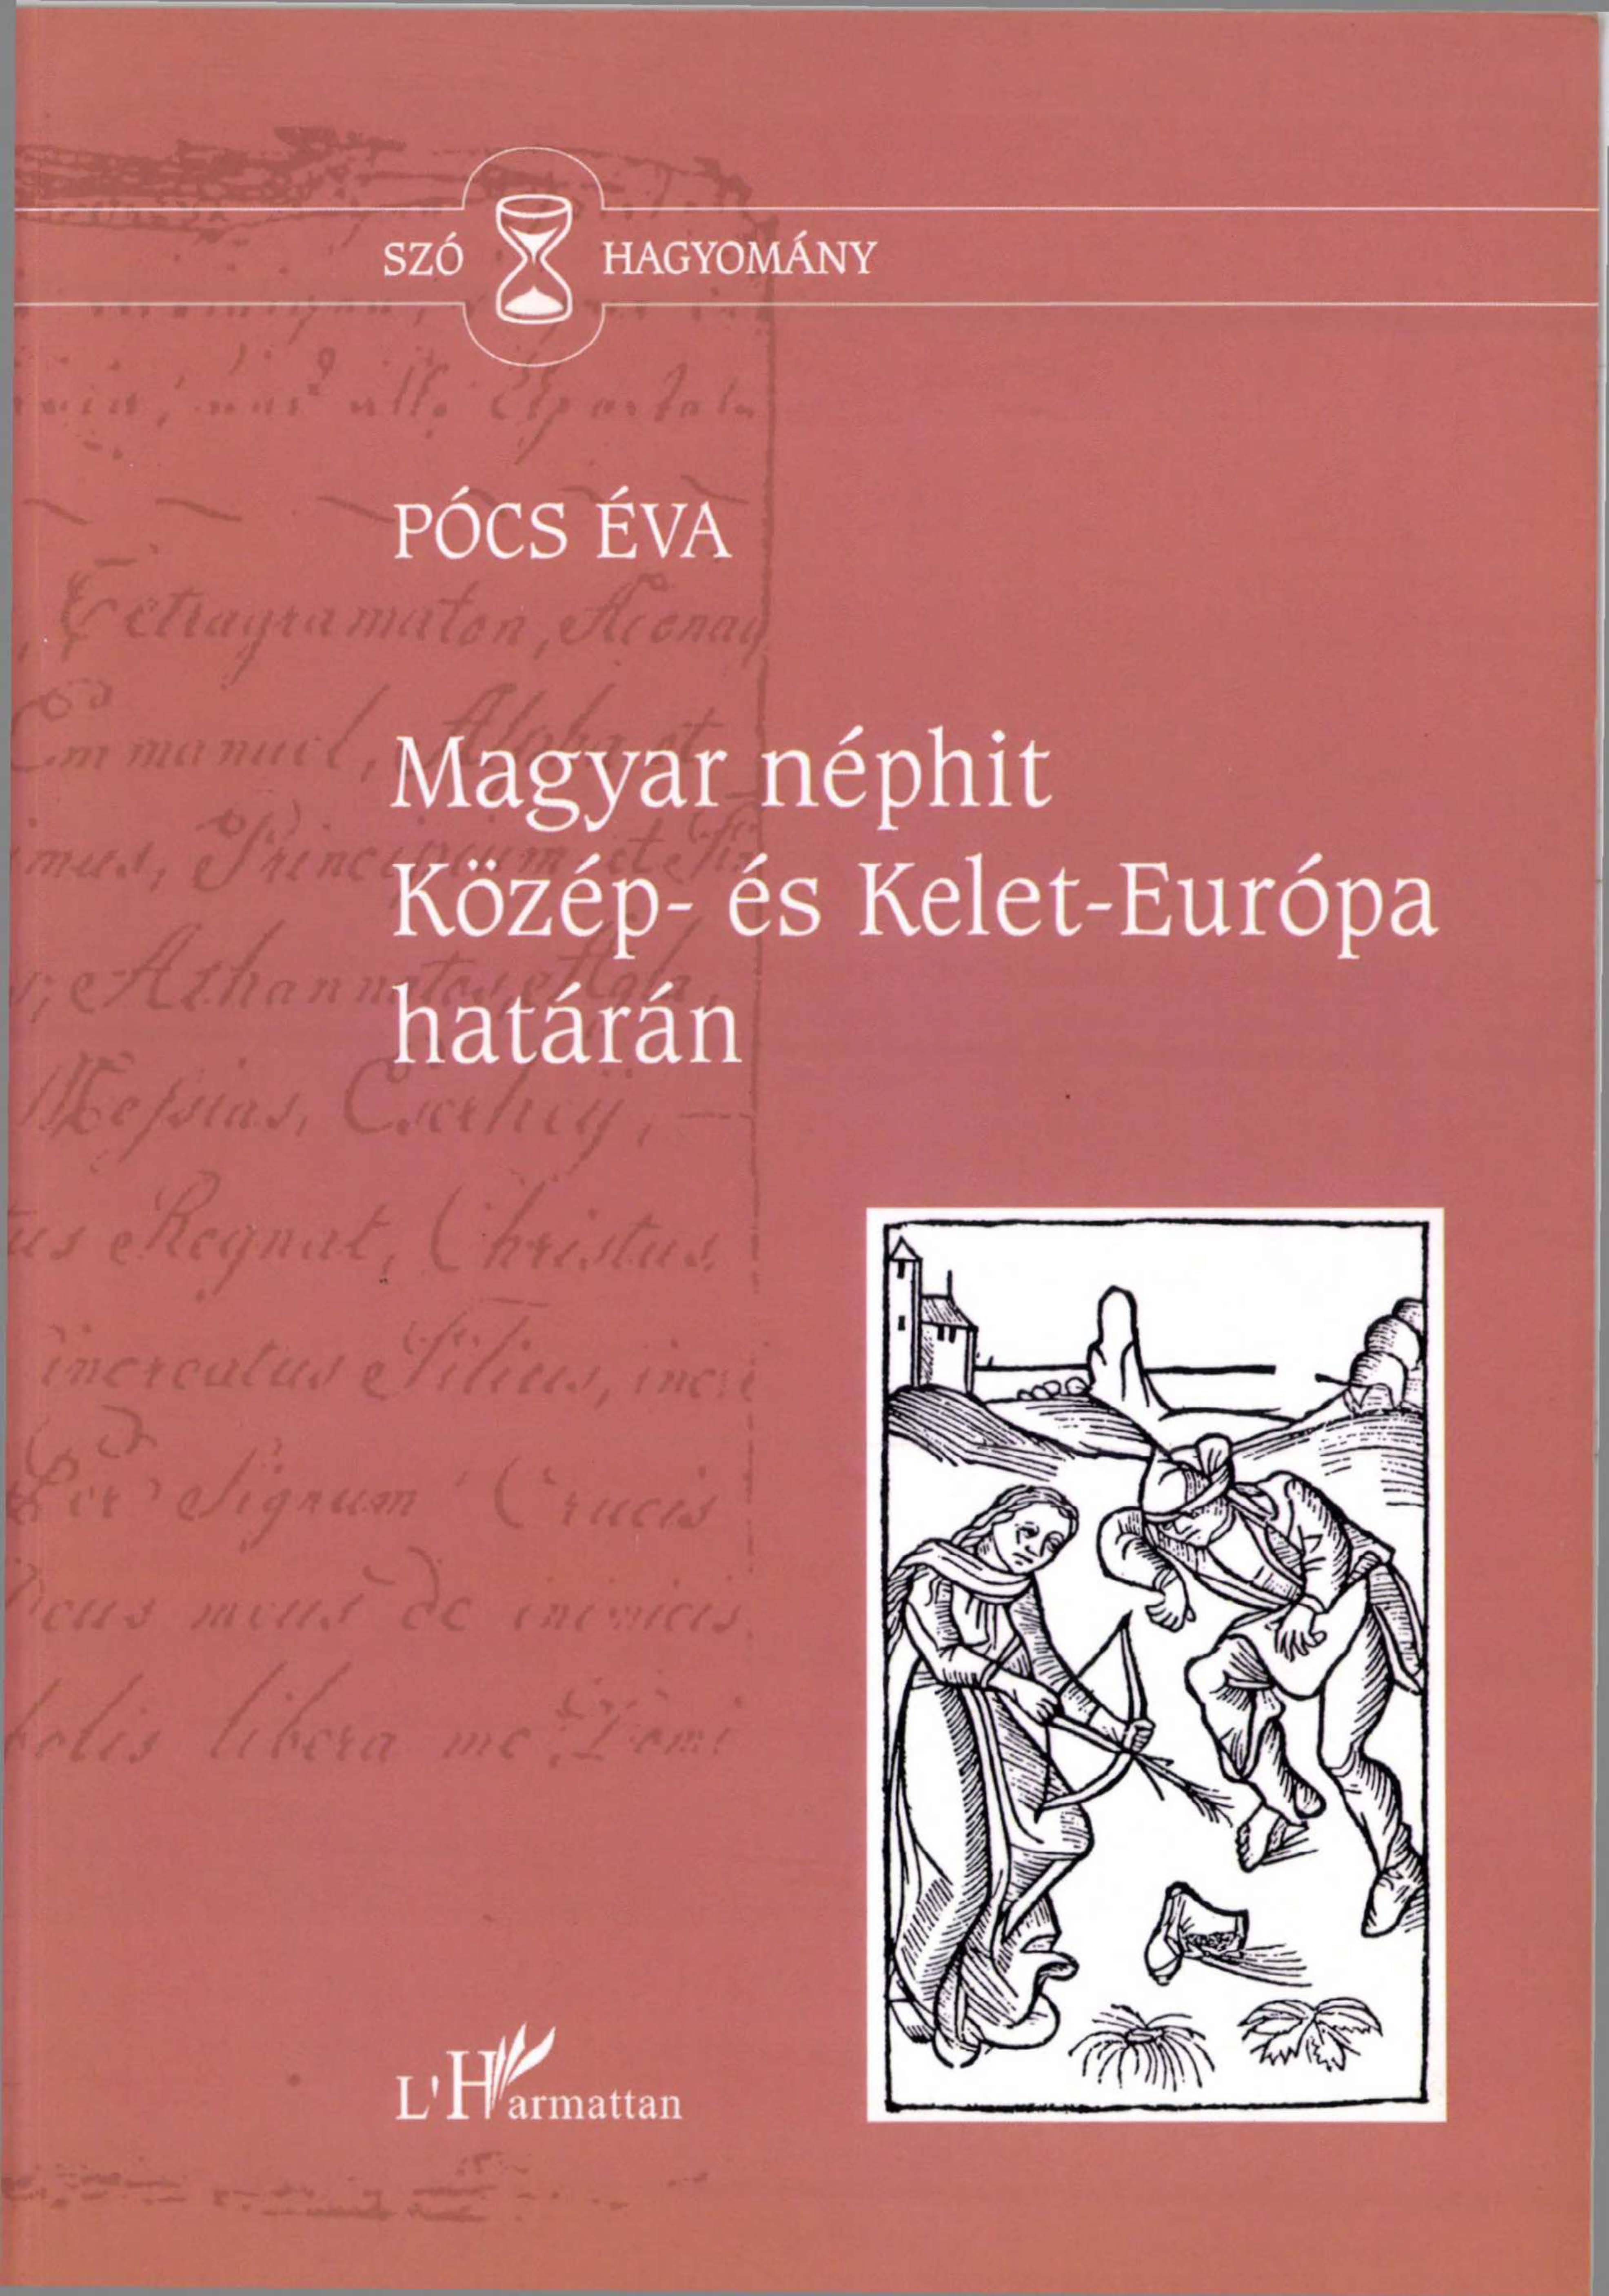 PÓCS É. Magyar néphit. Szóhagyomány I cover